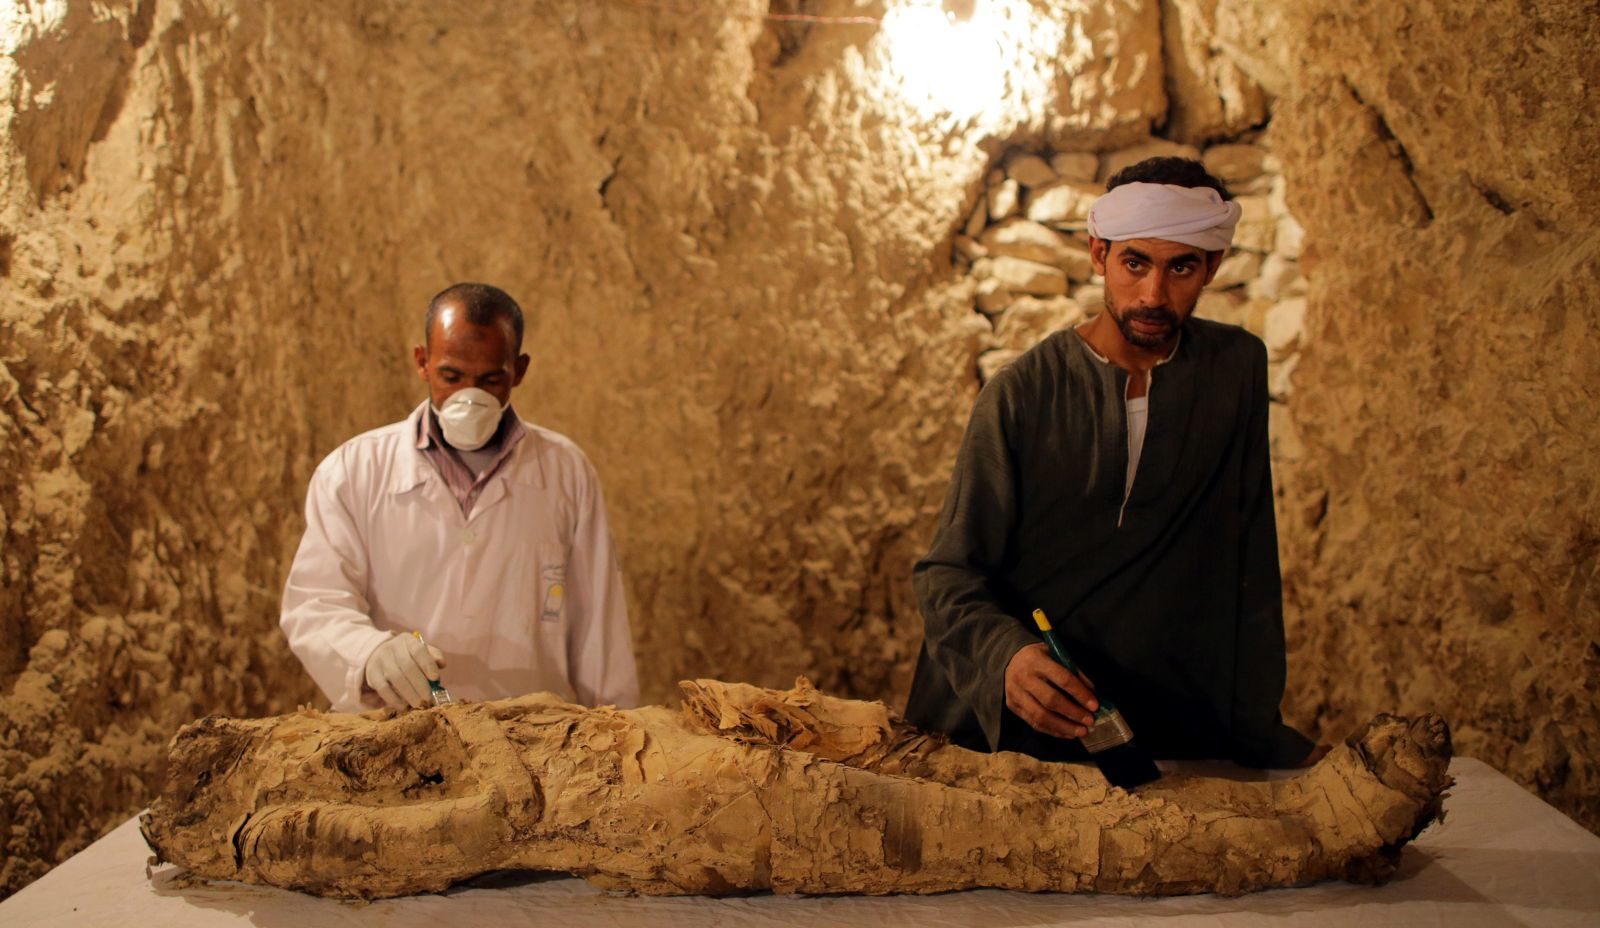 Egipat objavljuje otkriće 3500 godina starih grobnica u Luxoru